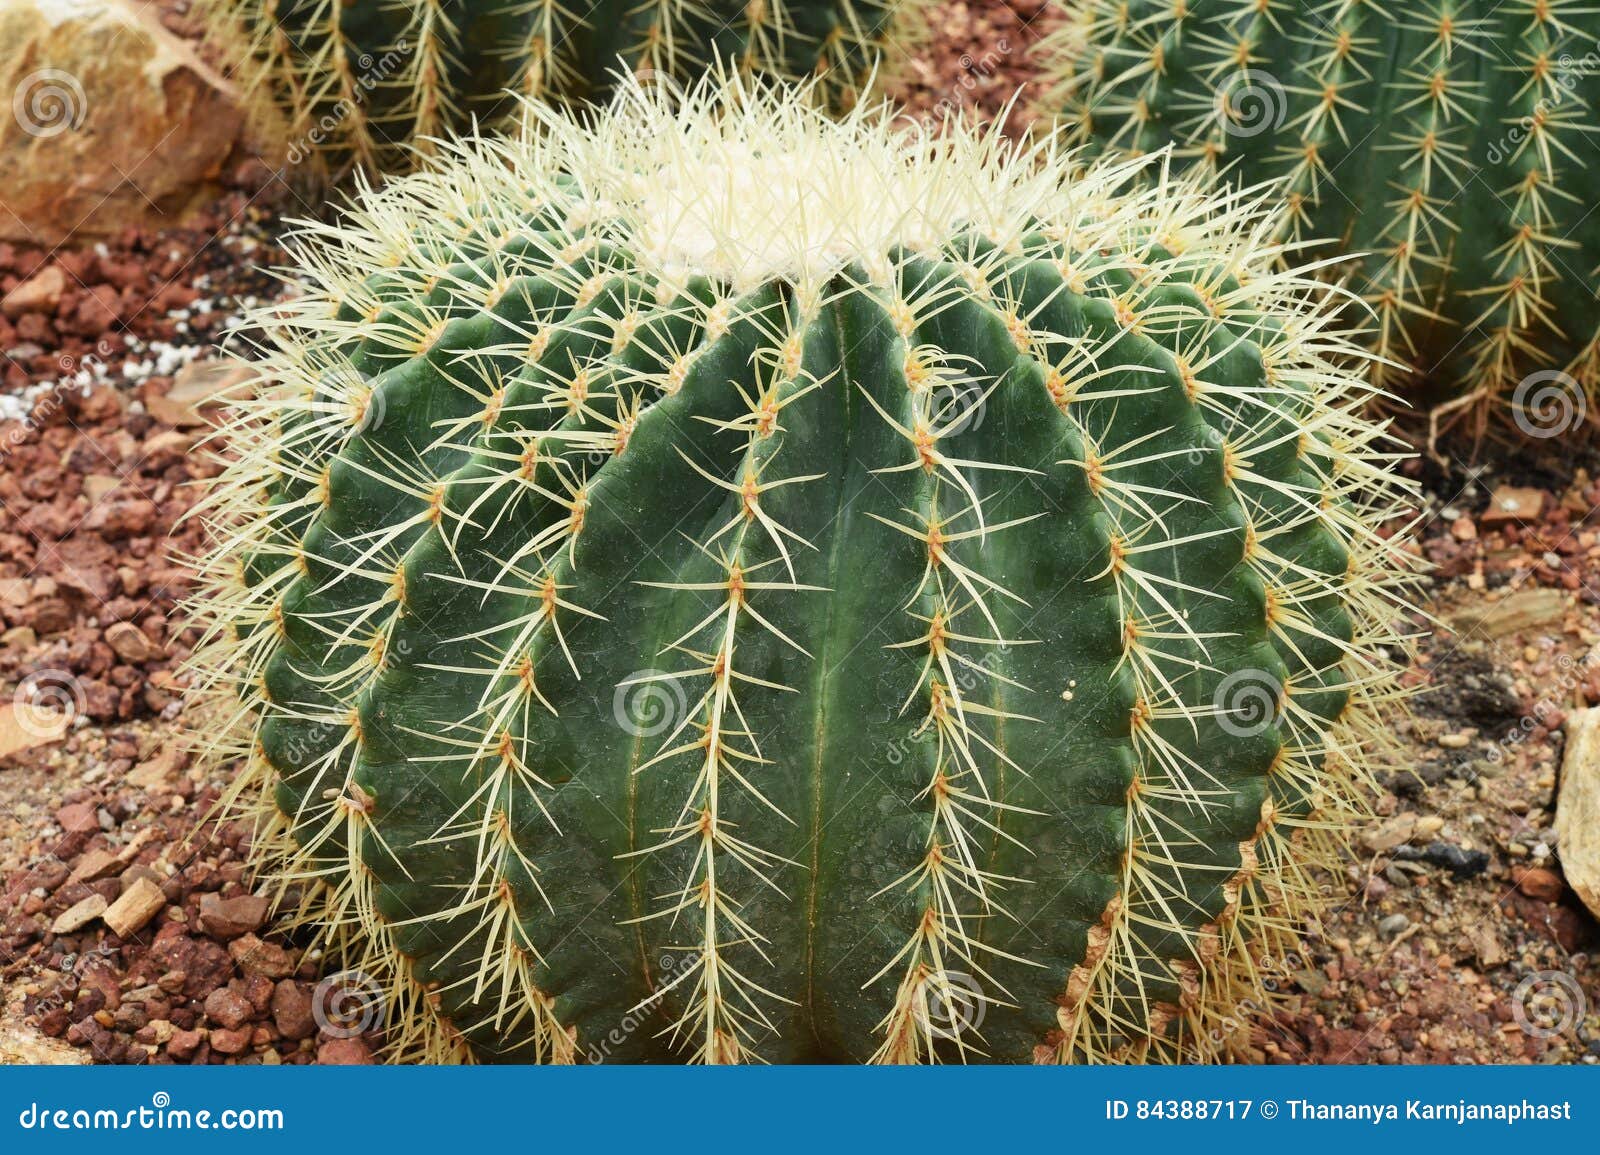 Kaktus in Der Wüste, Kaktus Natur Grünhintergrund Stockbild   Bild ...